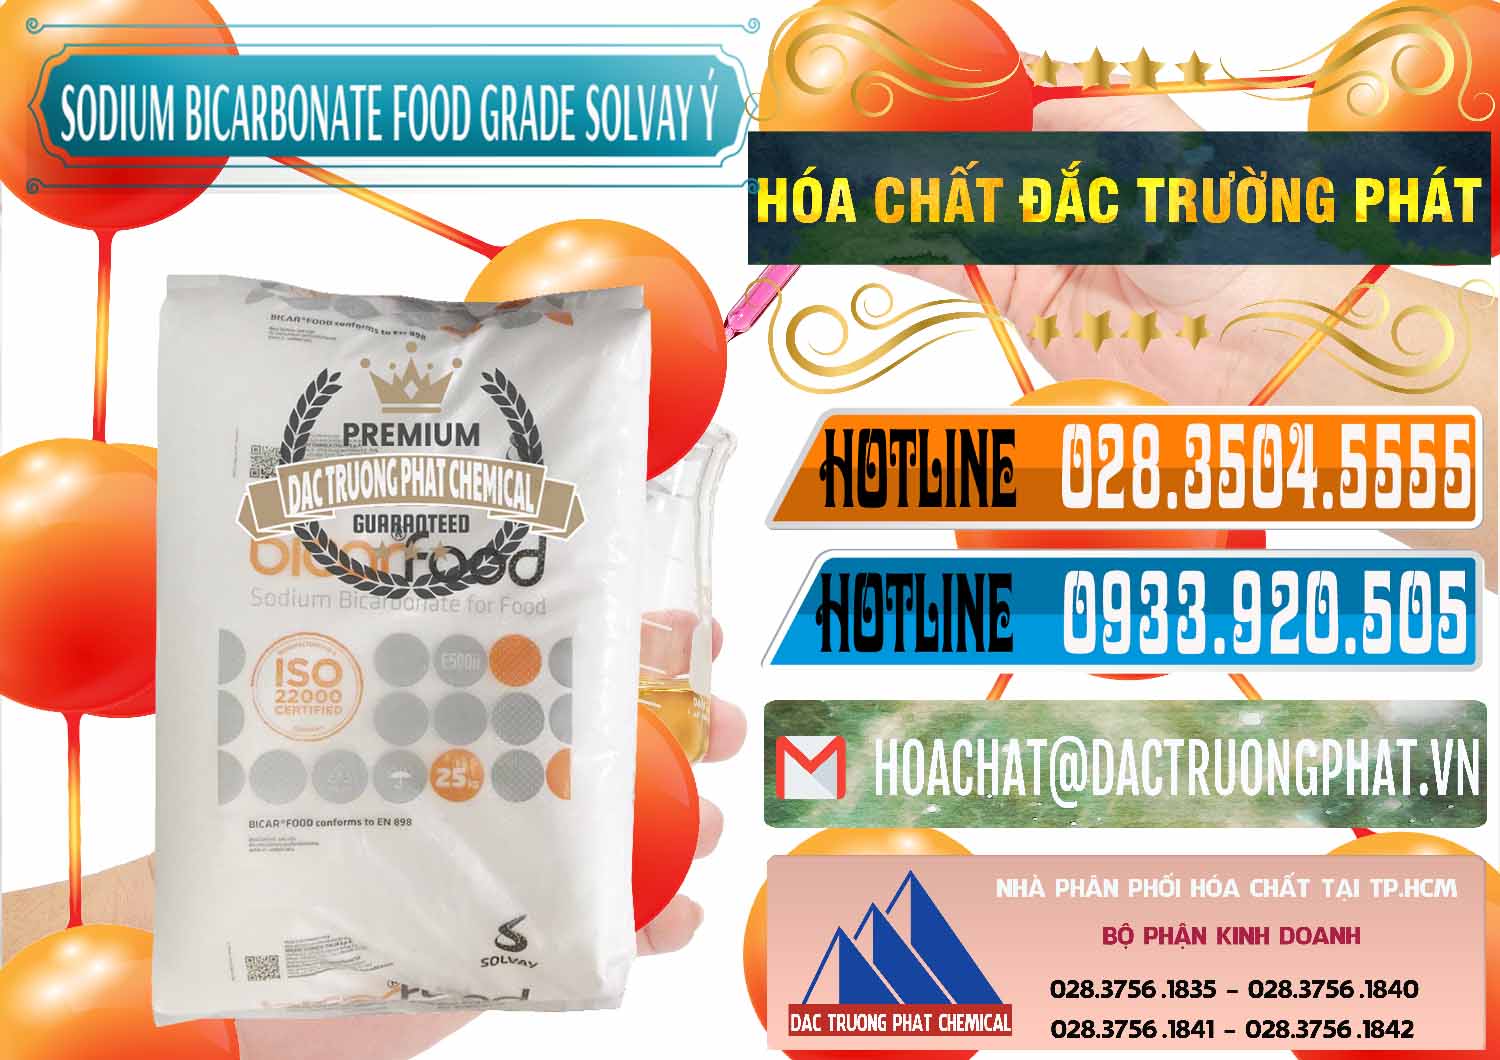 Nơi cung cấp và bán Sodium Bicarbonate – Bicar NaHCO3 Food Grade Solvay Ý Italy - 0220 - Công ty nhập khẩu ( cung cấp ) hóa chất tại TP.HCM - stmp.net